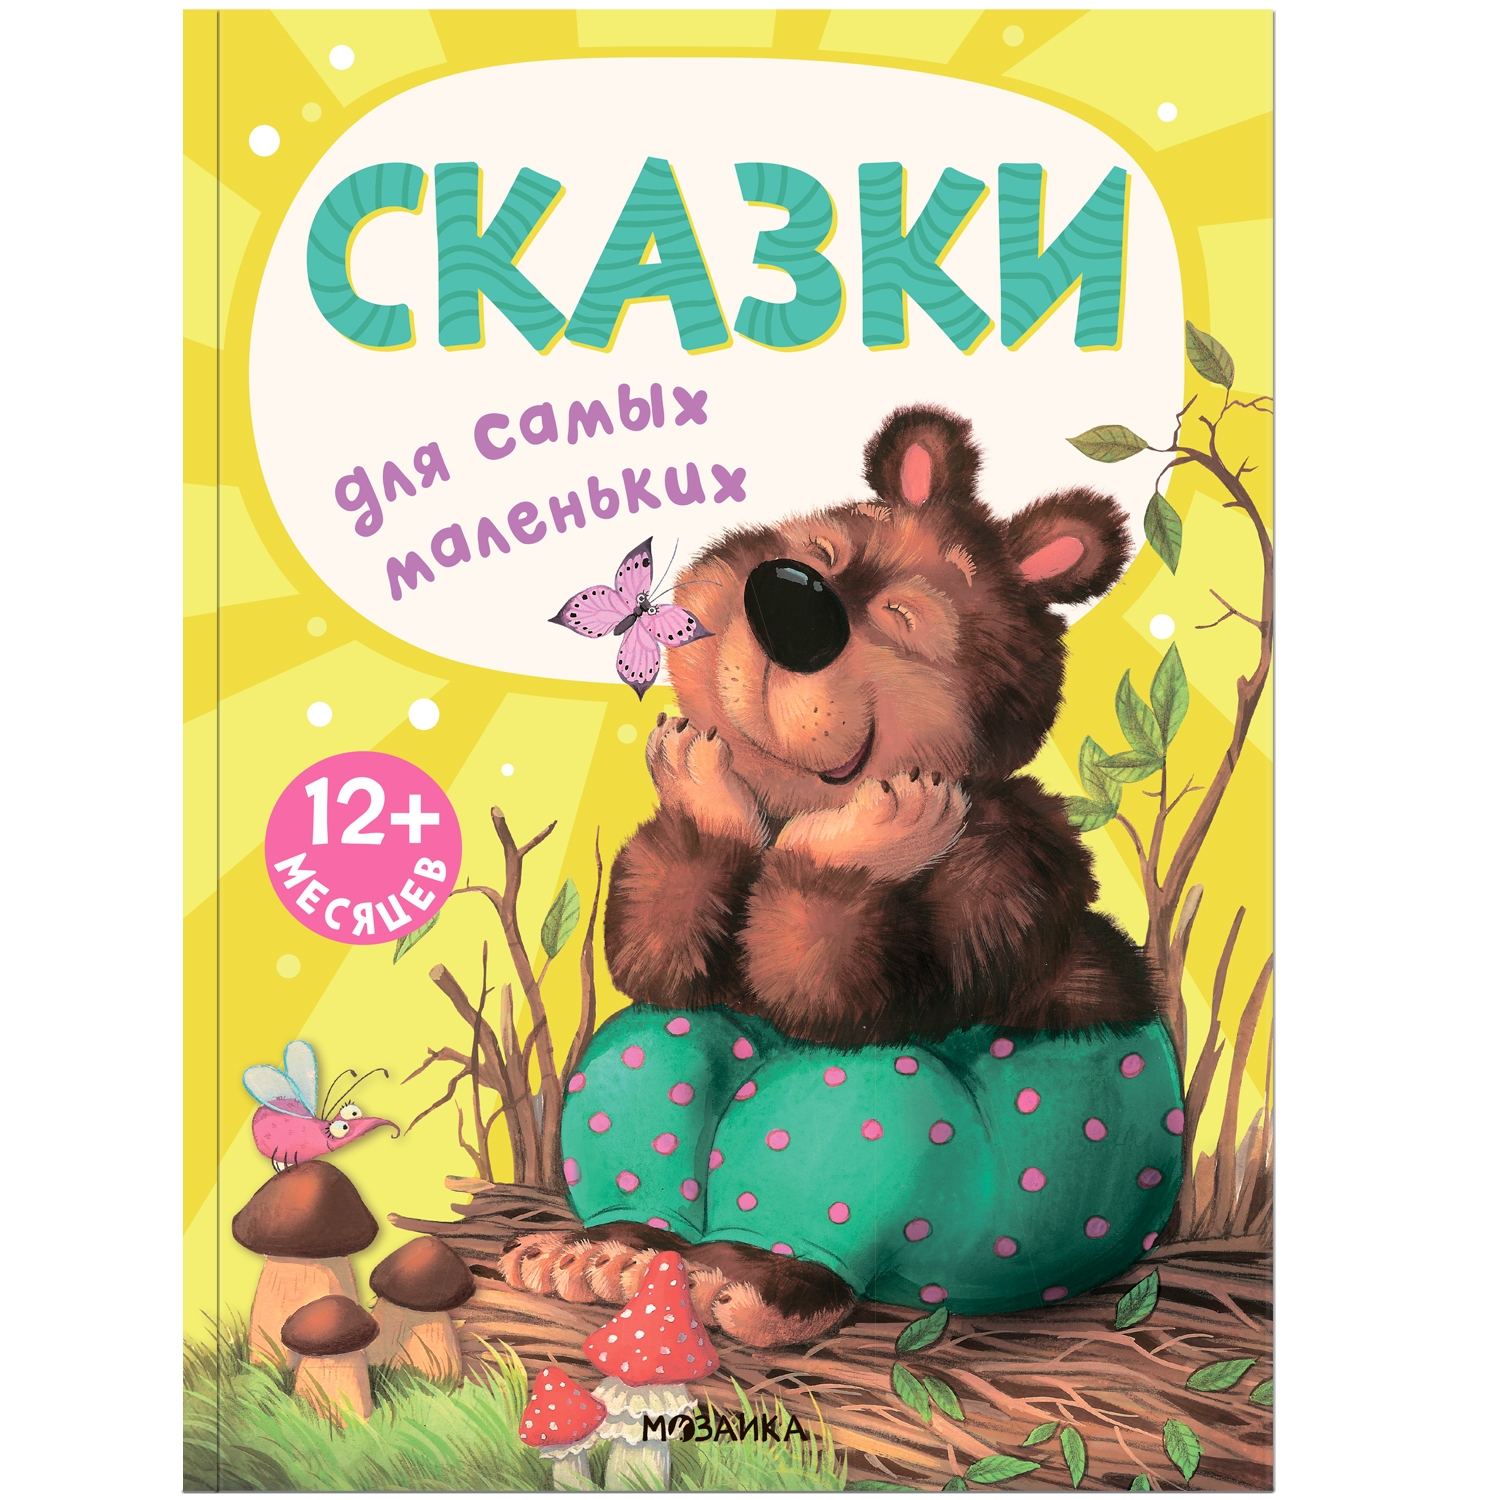 МОЗАИКА kids издательство Сказки (Книжки для самых маленьких), сборник сказок